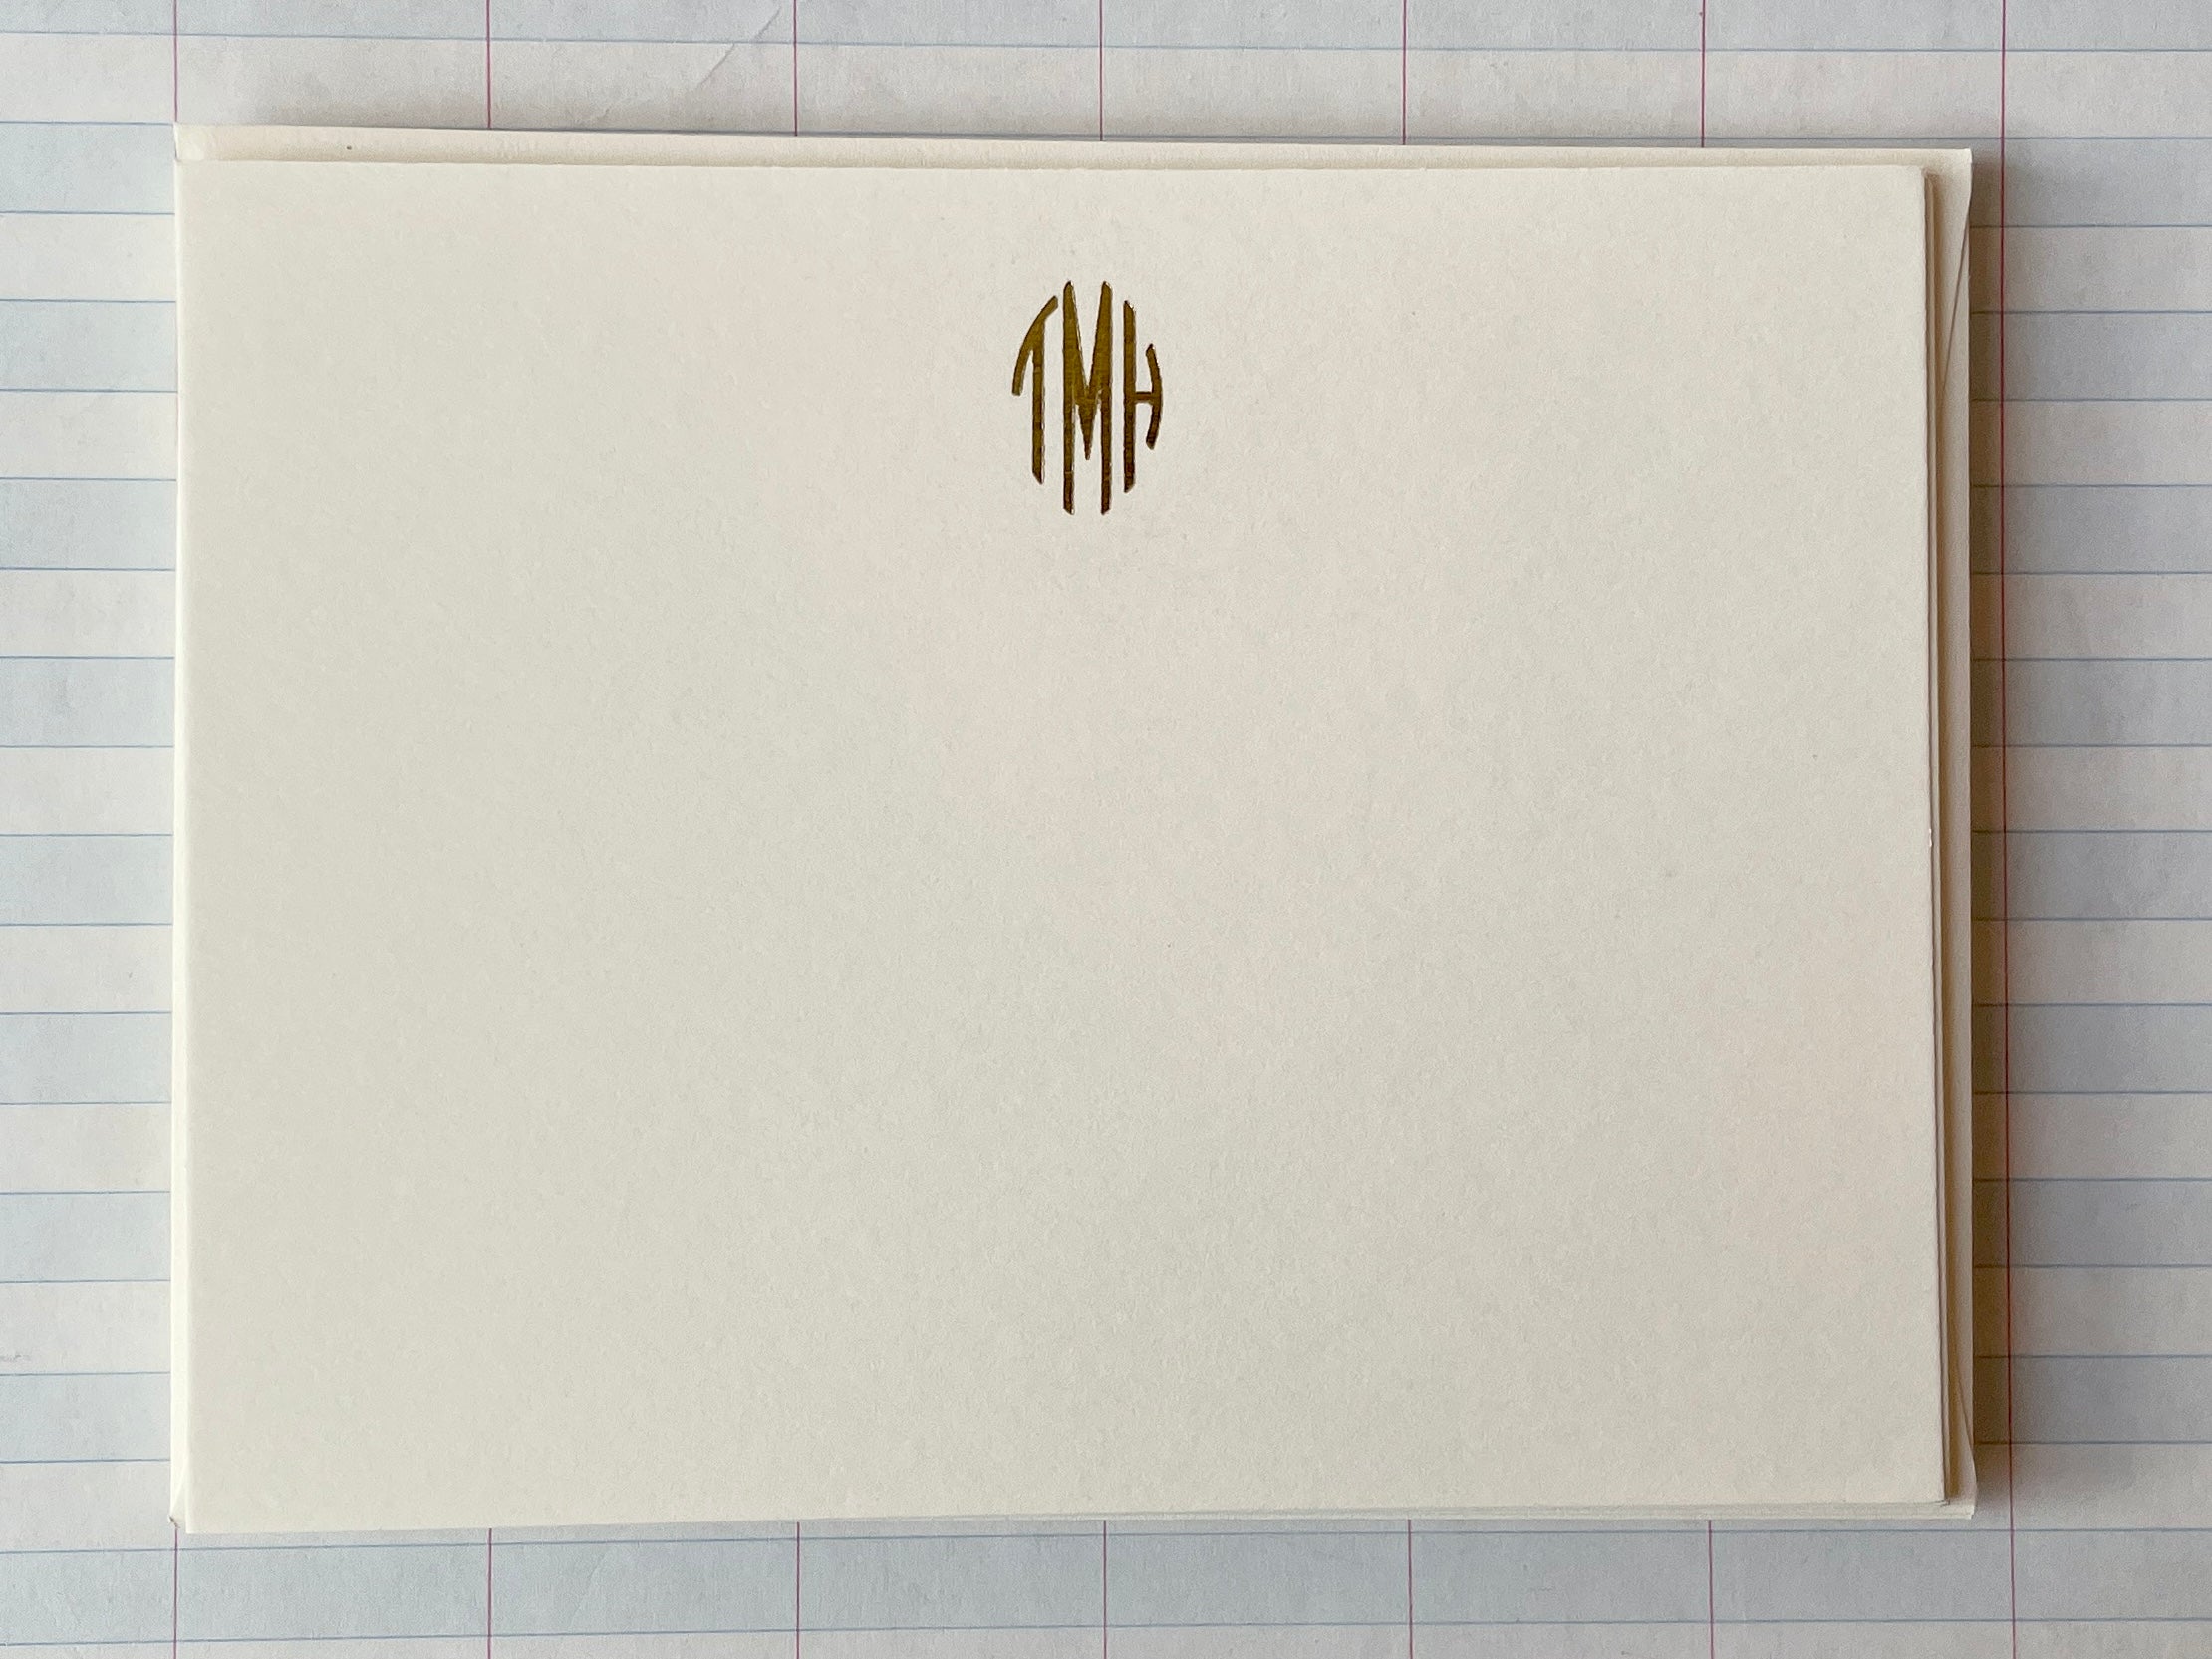 Ornate Gold Foil-pressed Tri-letter Oval Monogram